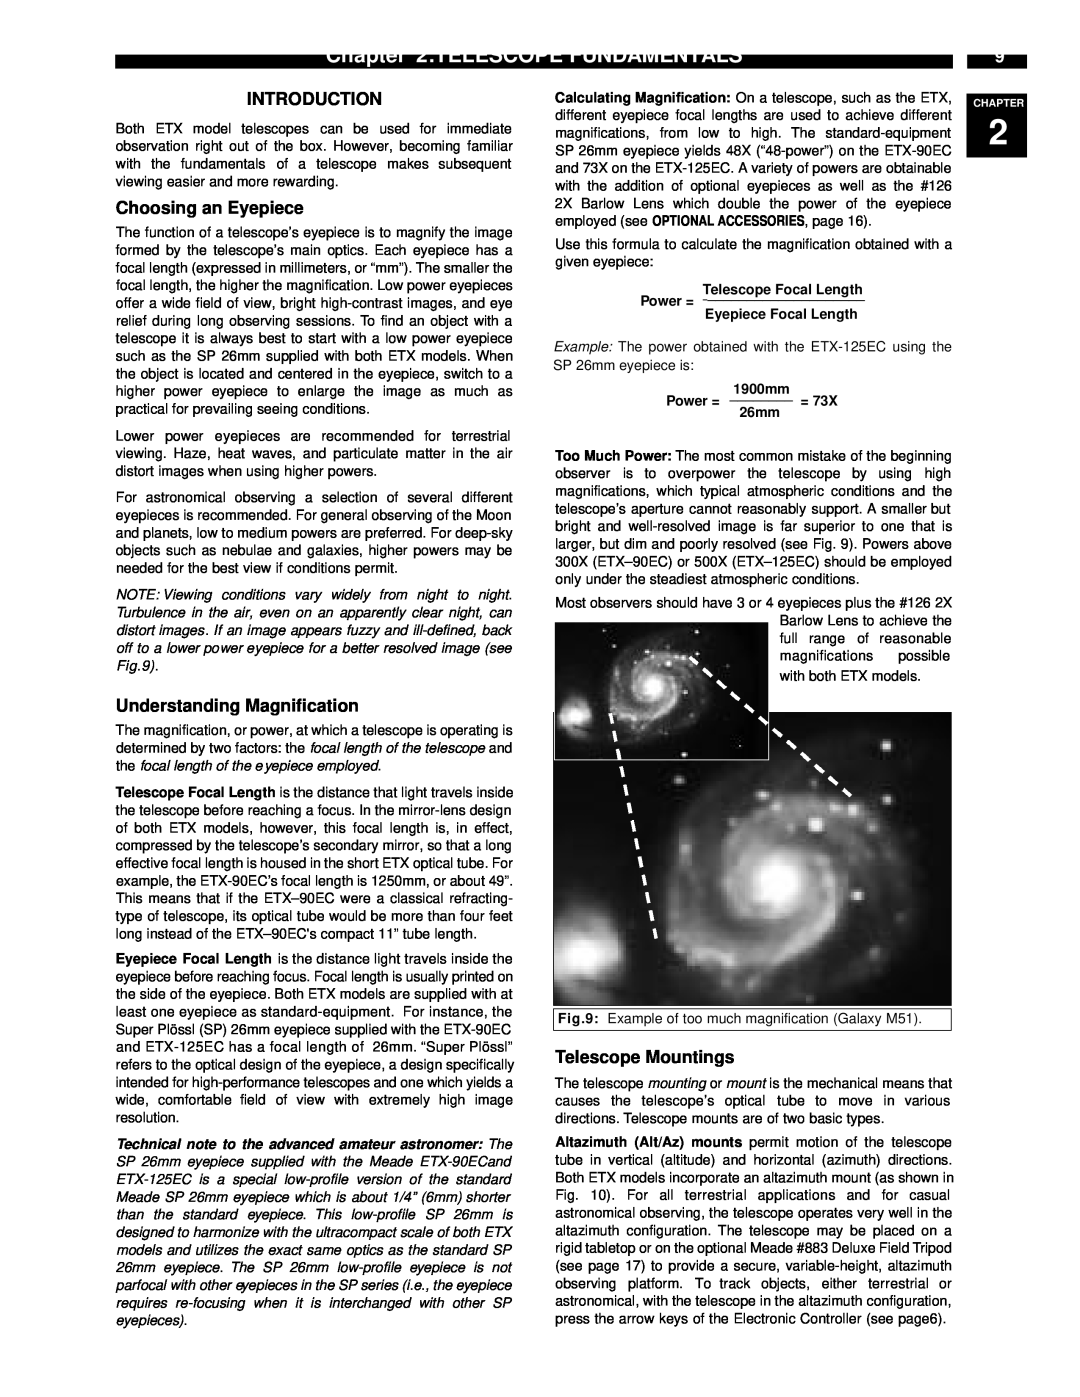 Meade ETX-90EC Telescope Fundamentals, Telescope Focal Length Power = Eyepiece Focal Length, 1900mm Power = = 26mm 